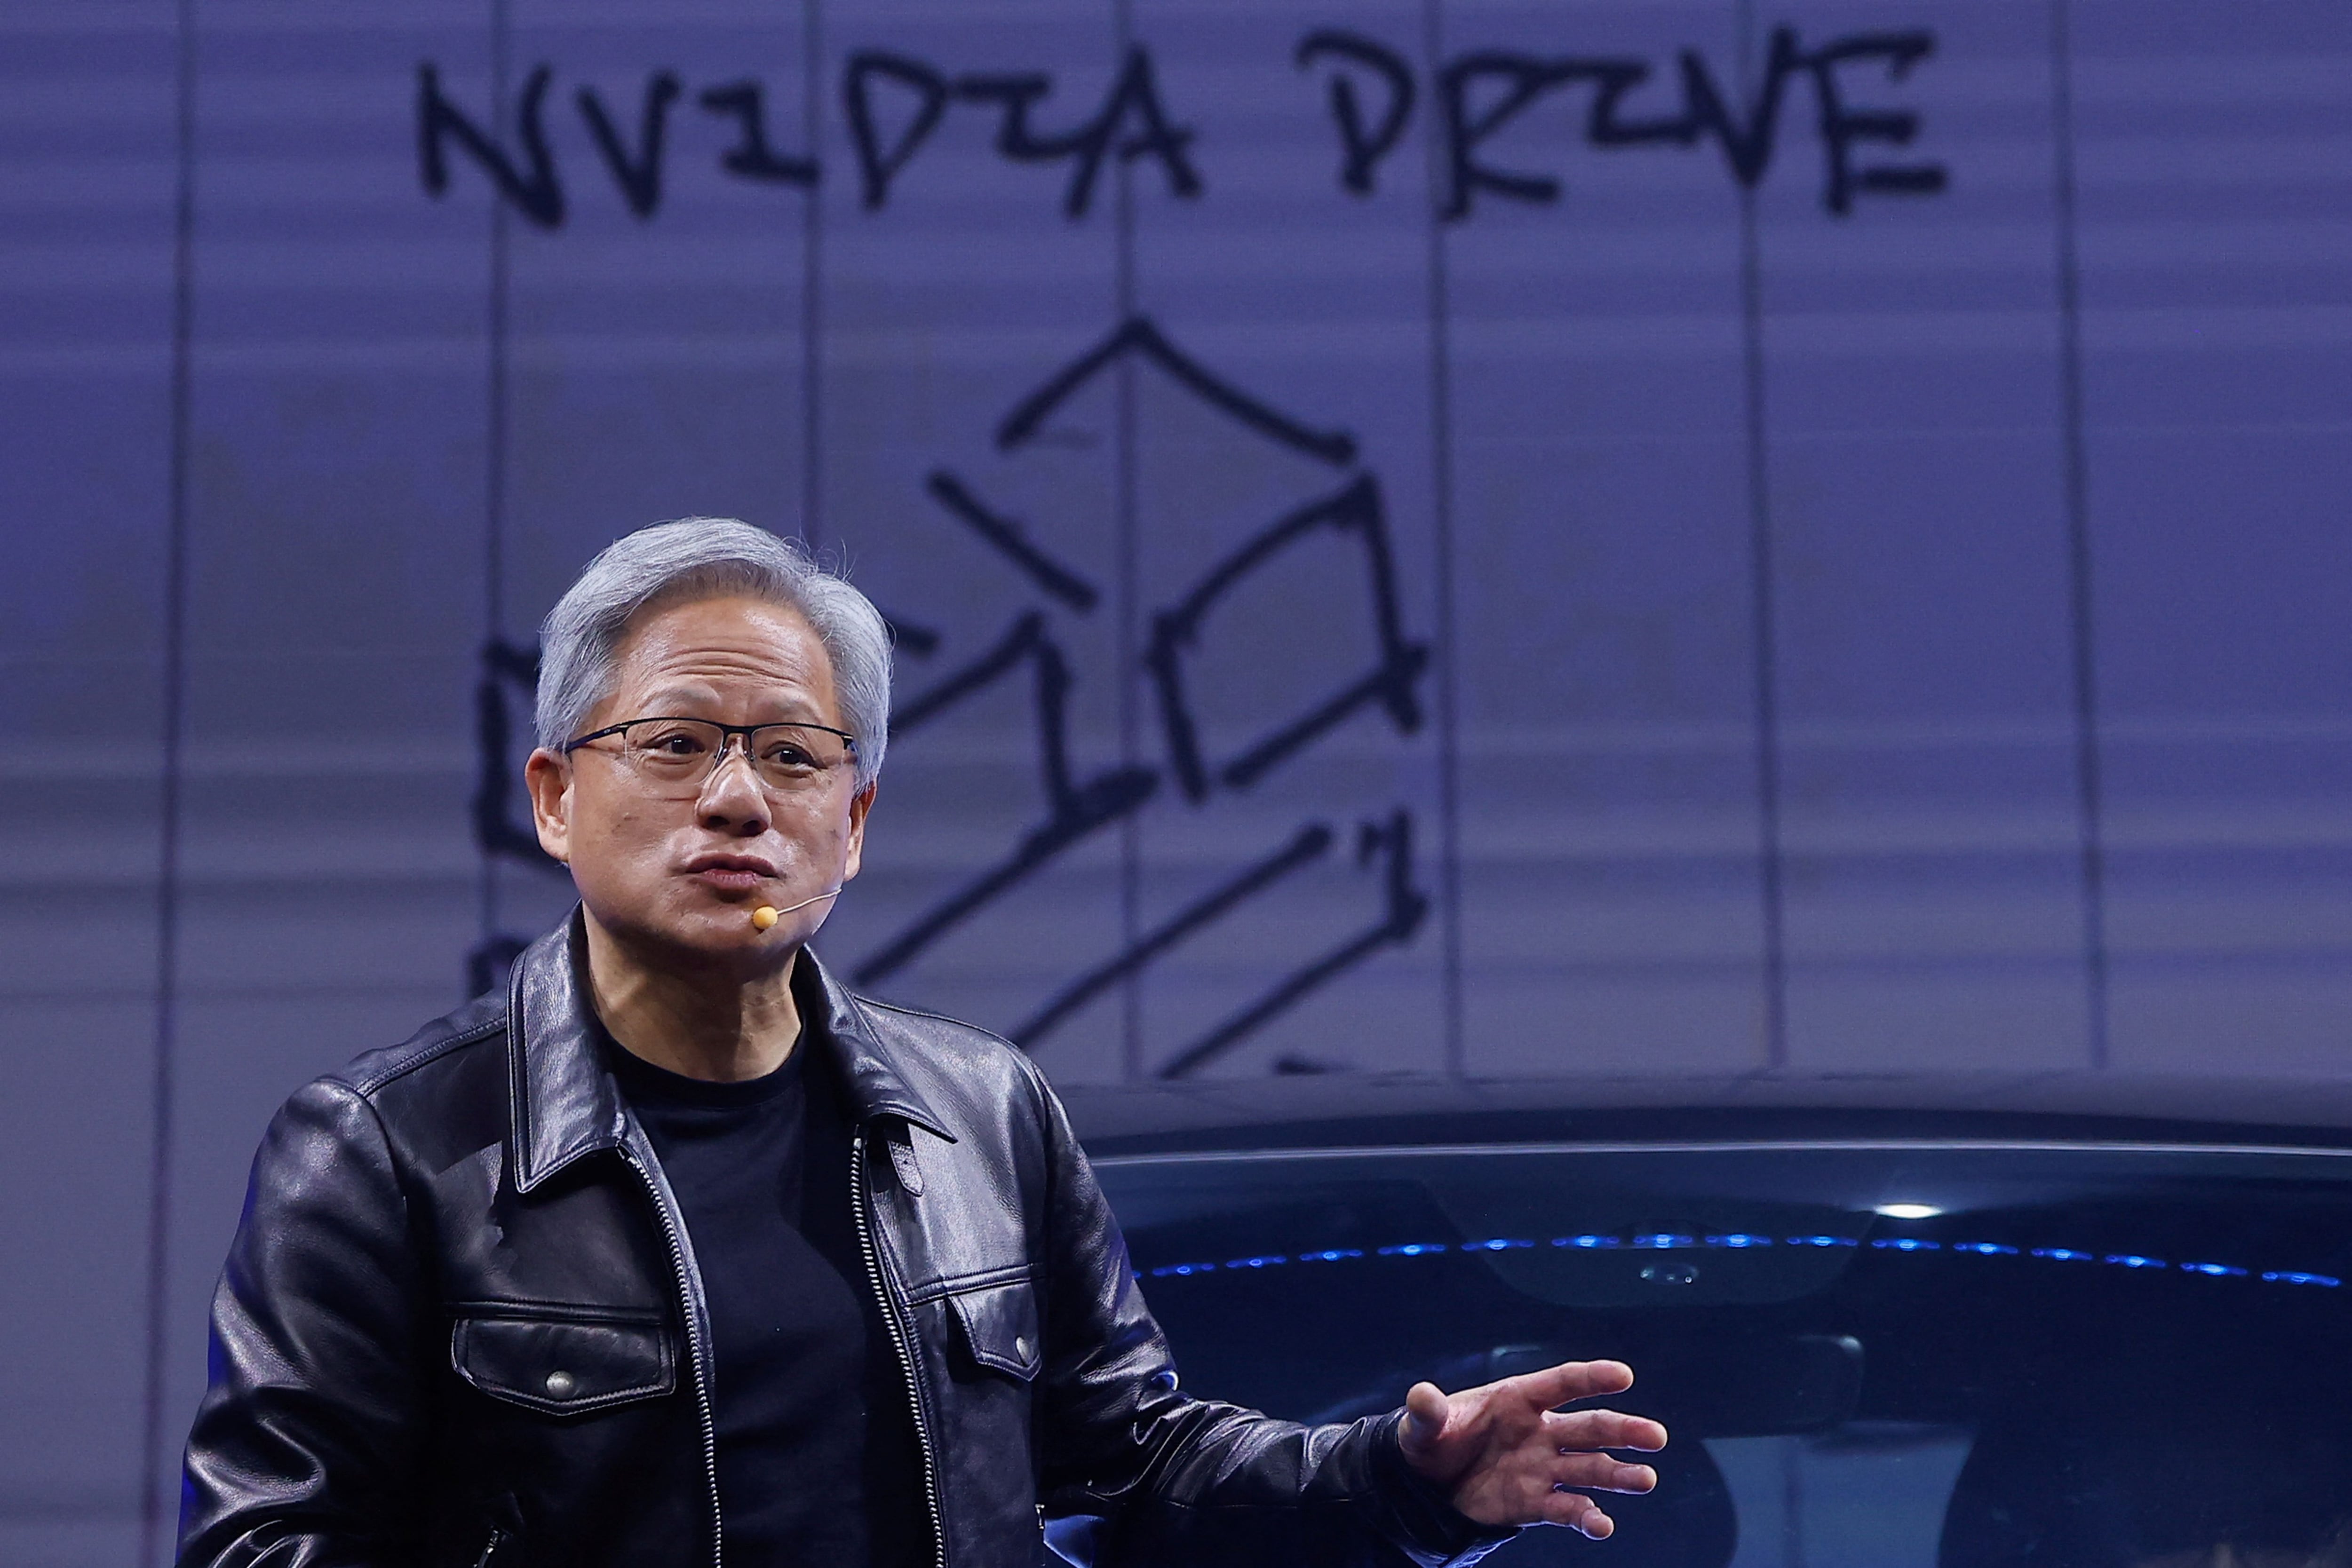 El CEO de Nvidia cree que la dedicación al trabajo es la clave para no ceder ante el avance de la IA